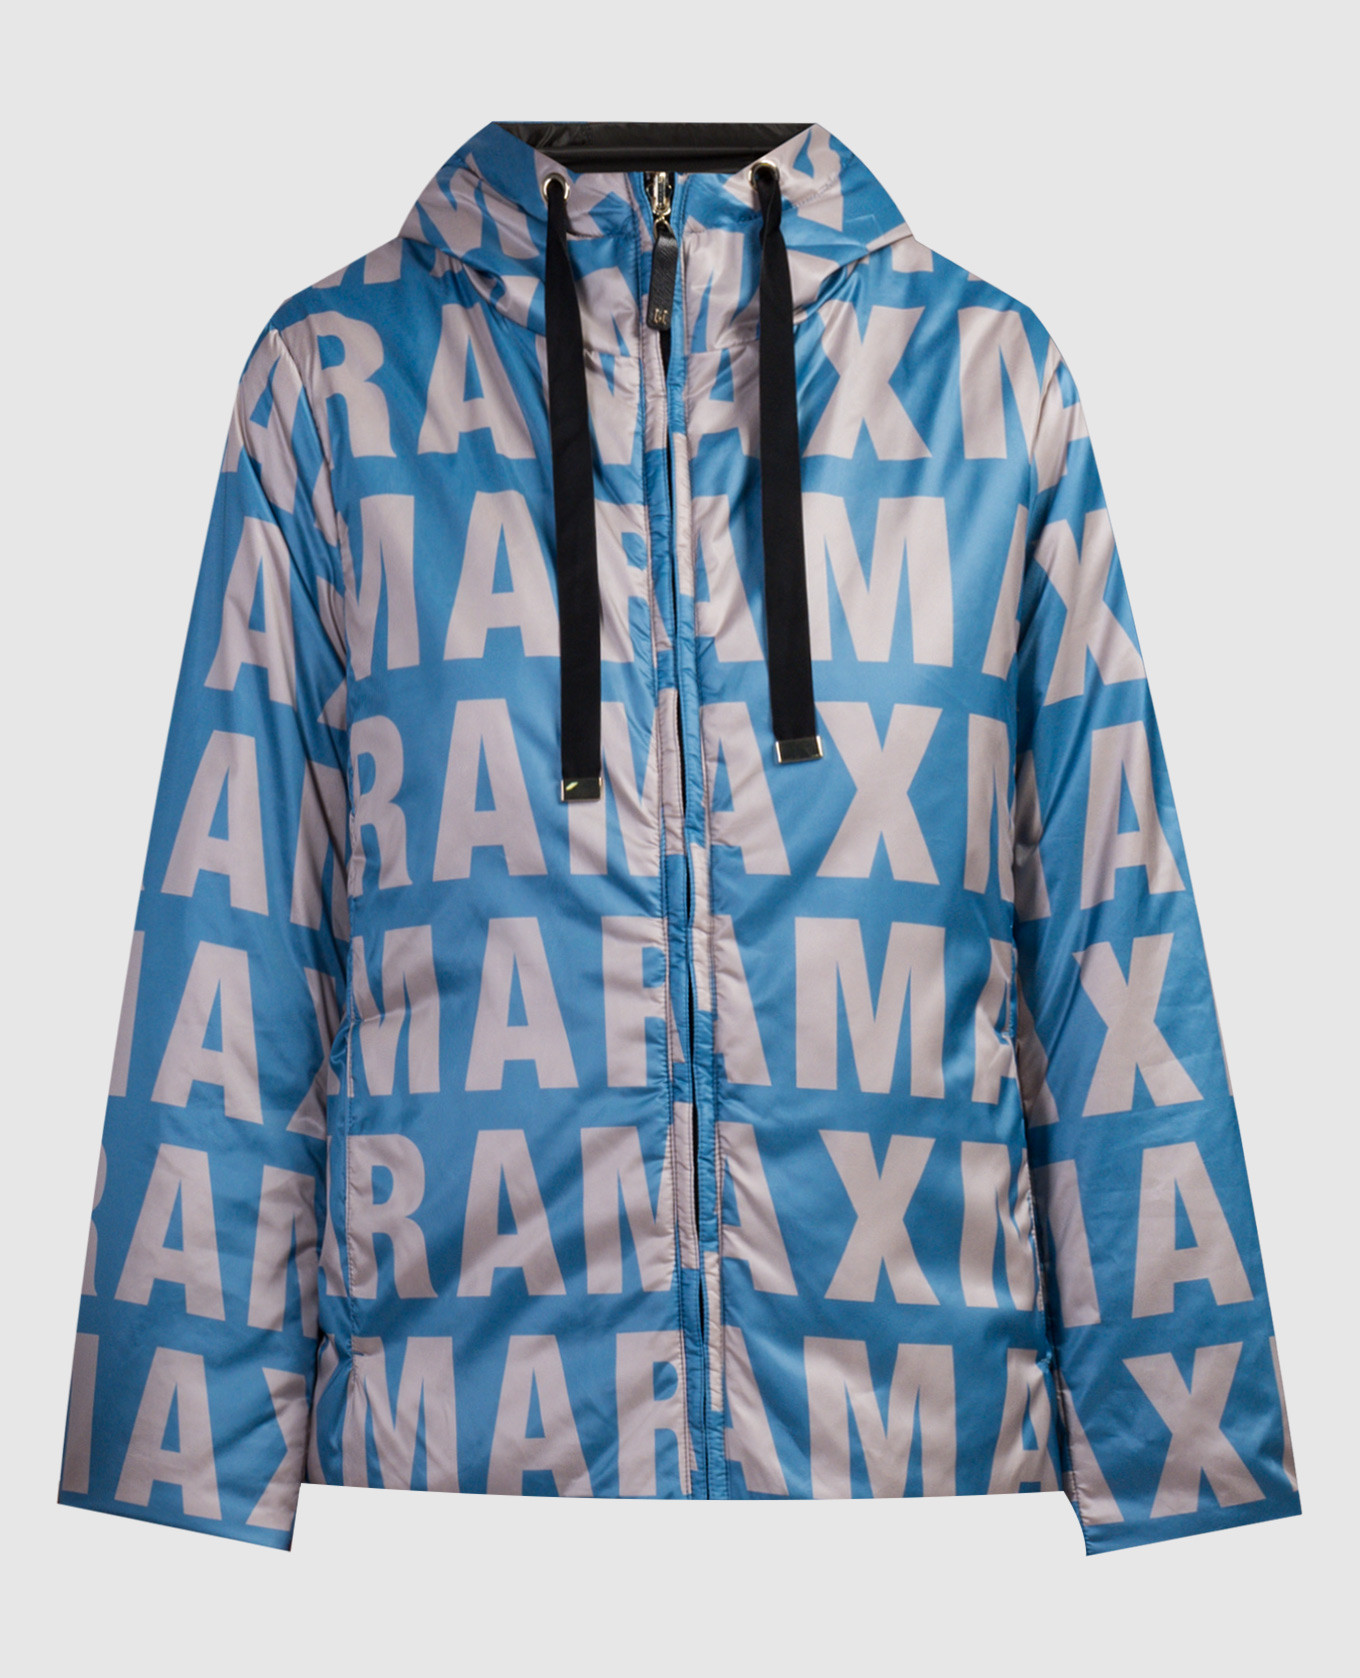 Двухсторонняя куртка Greenmax контрастная с логотипом.